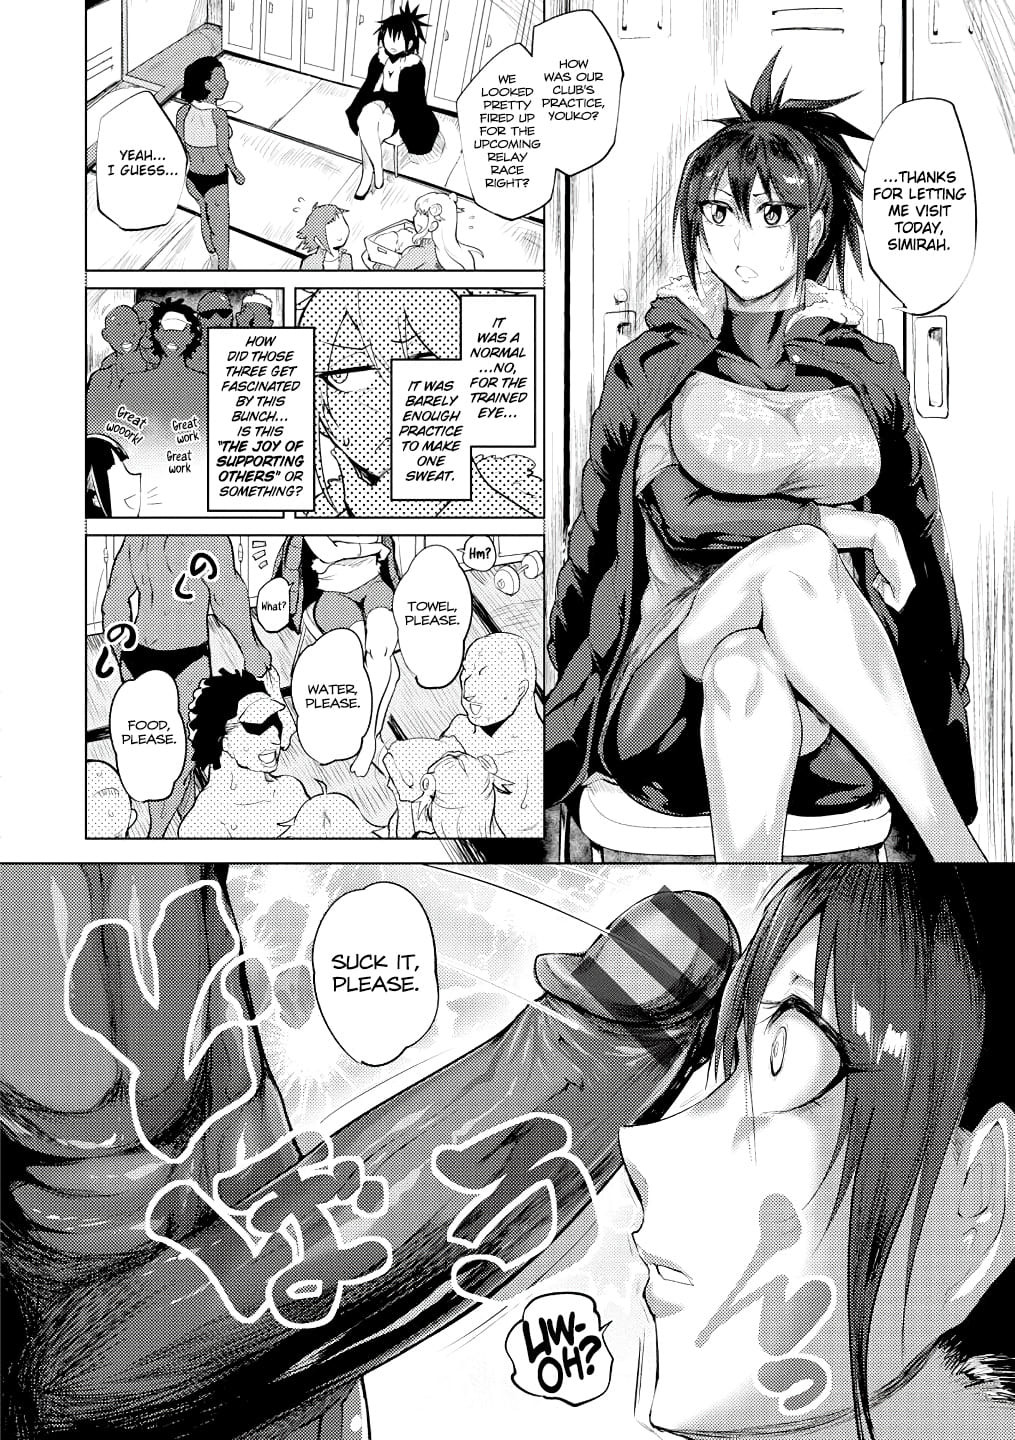 Big cock hentai manga